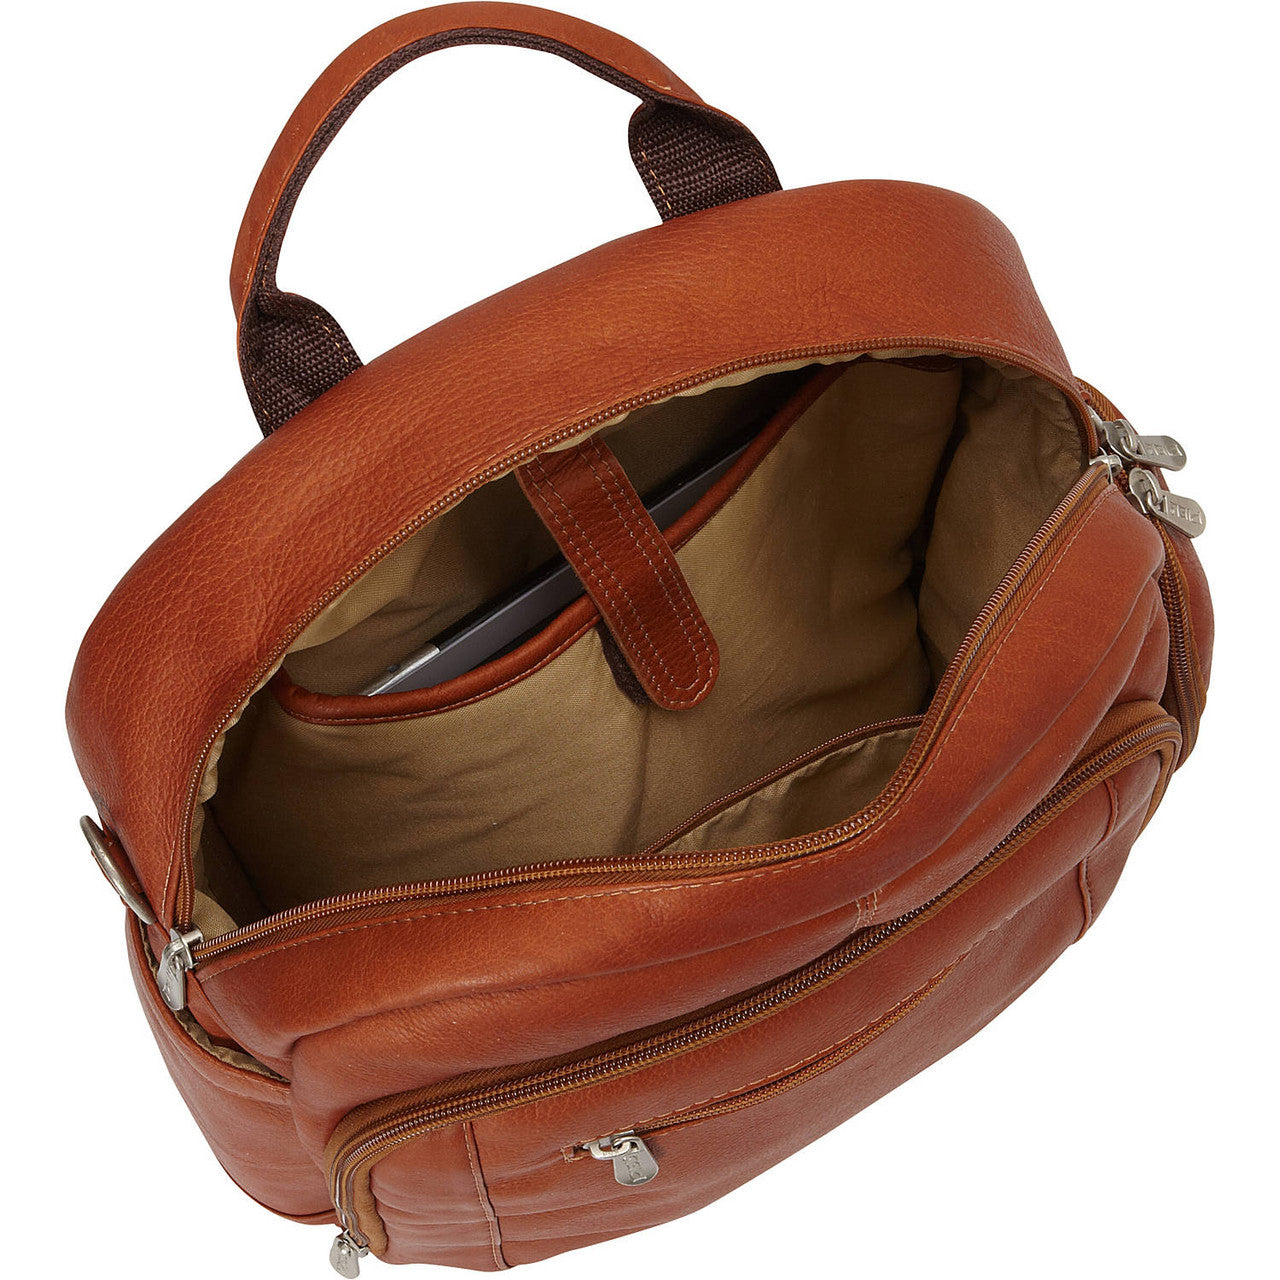 Laptop Backpack/Shoulder Bag - Leather Loom